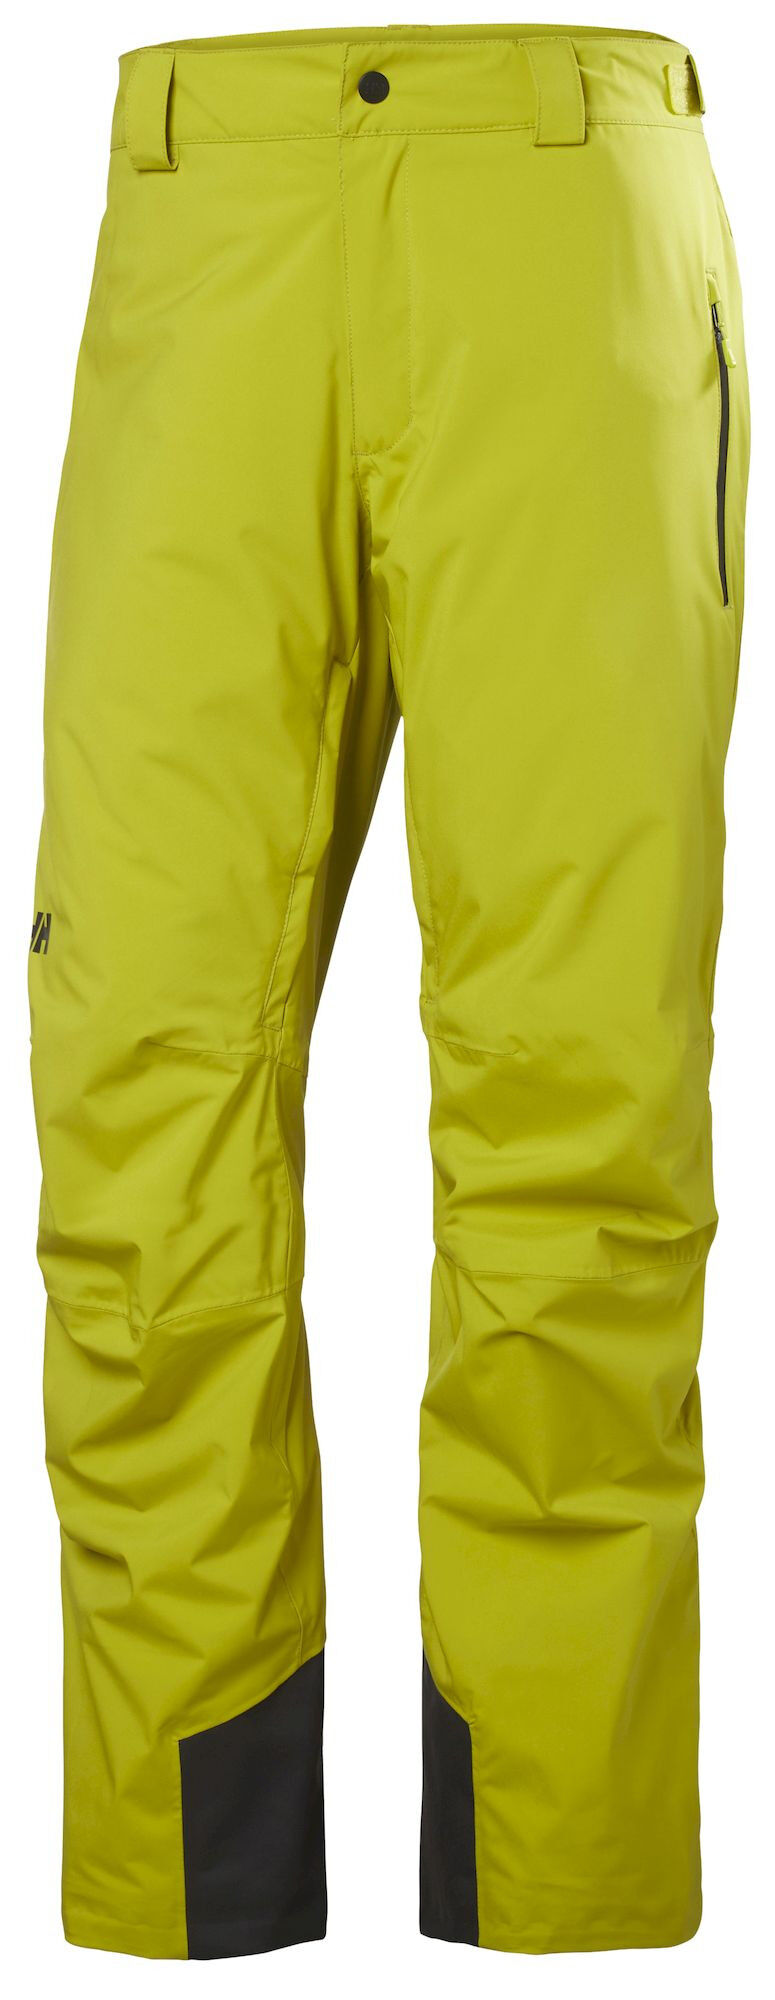 Helly Hansen Legendary Insulated Pant - Ski pants - Men's